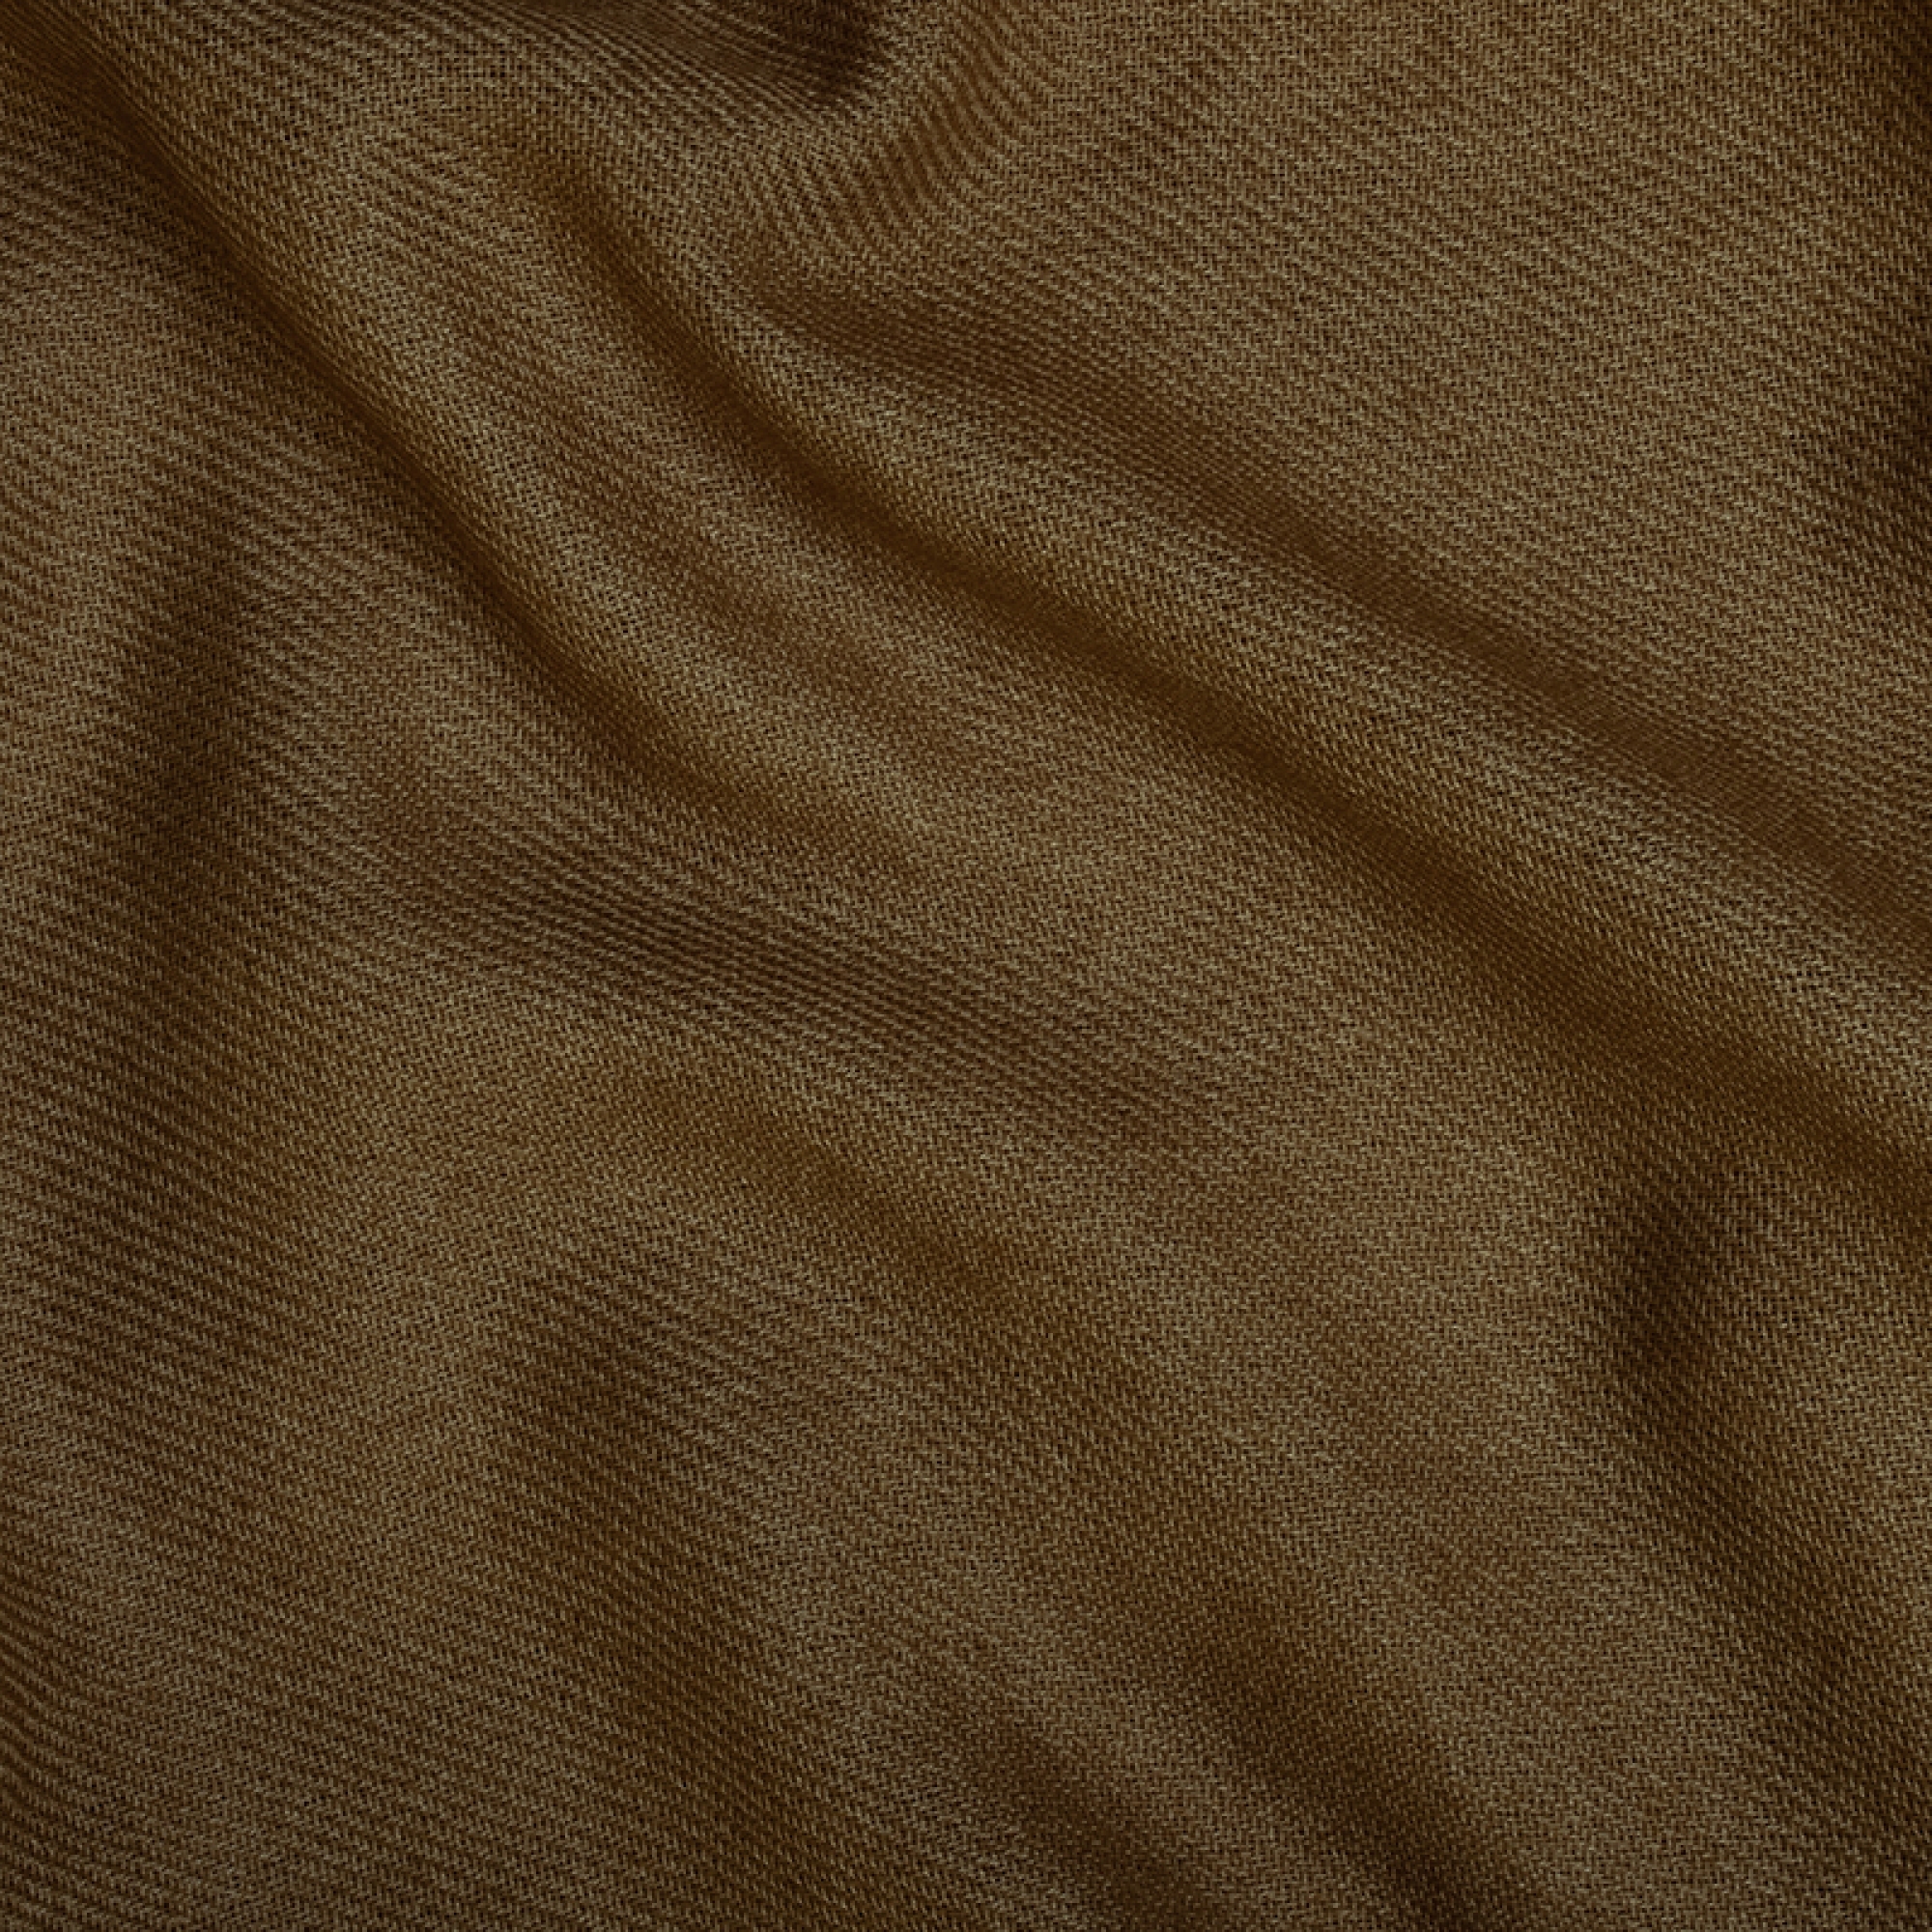 Cachemire accessoires couvertures plaids toodoo plain xl 240 x 260 bronze 240 x 260 cm